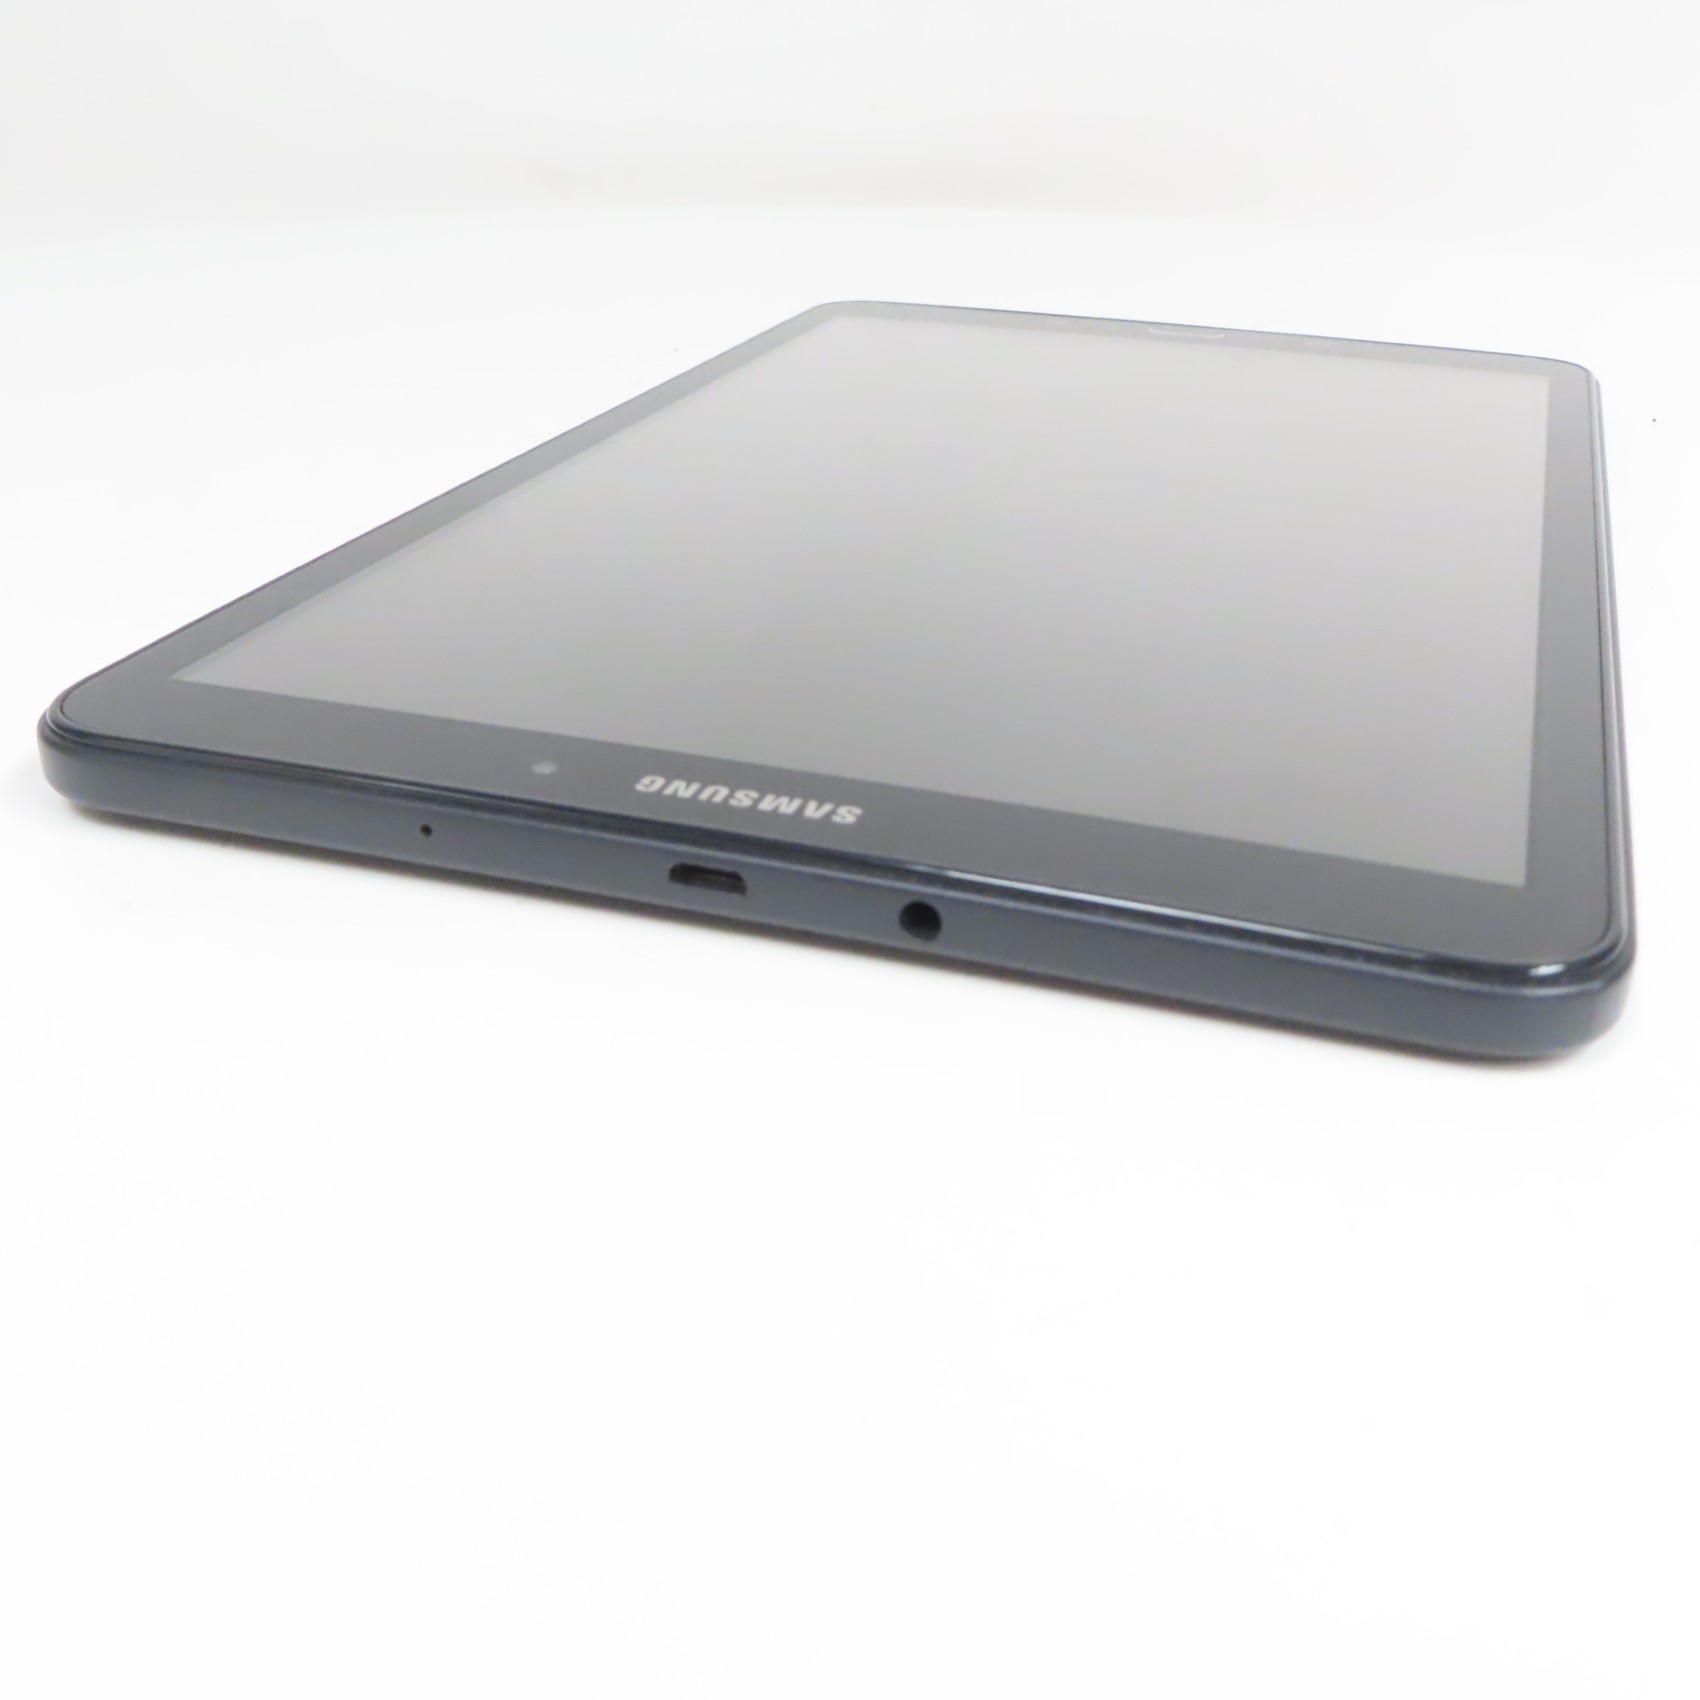 Samsung Galaxy Tab A 10.1 16GB Black SM-T580 (WIFI)